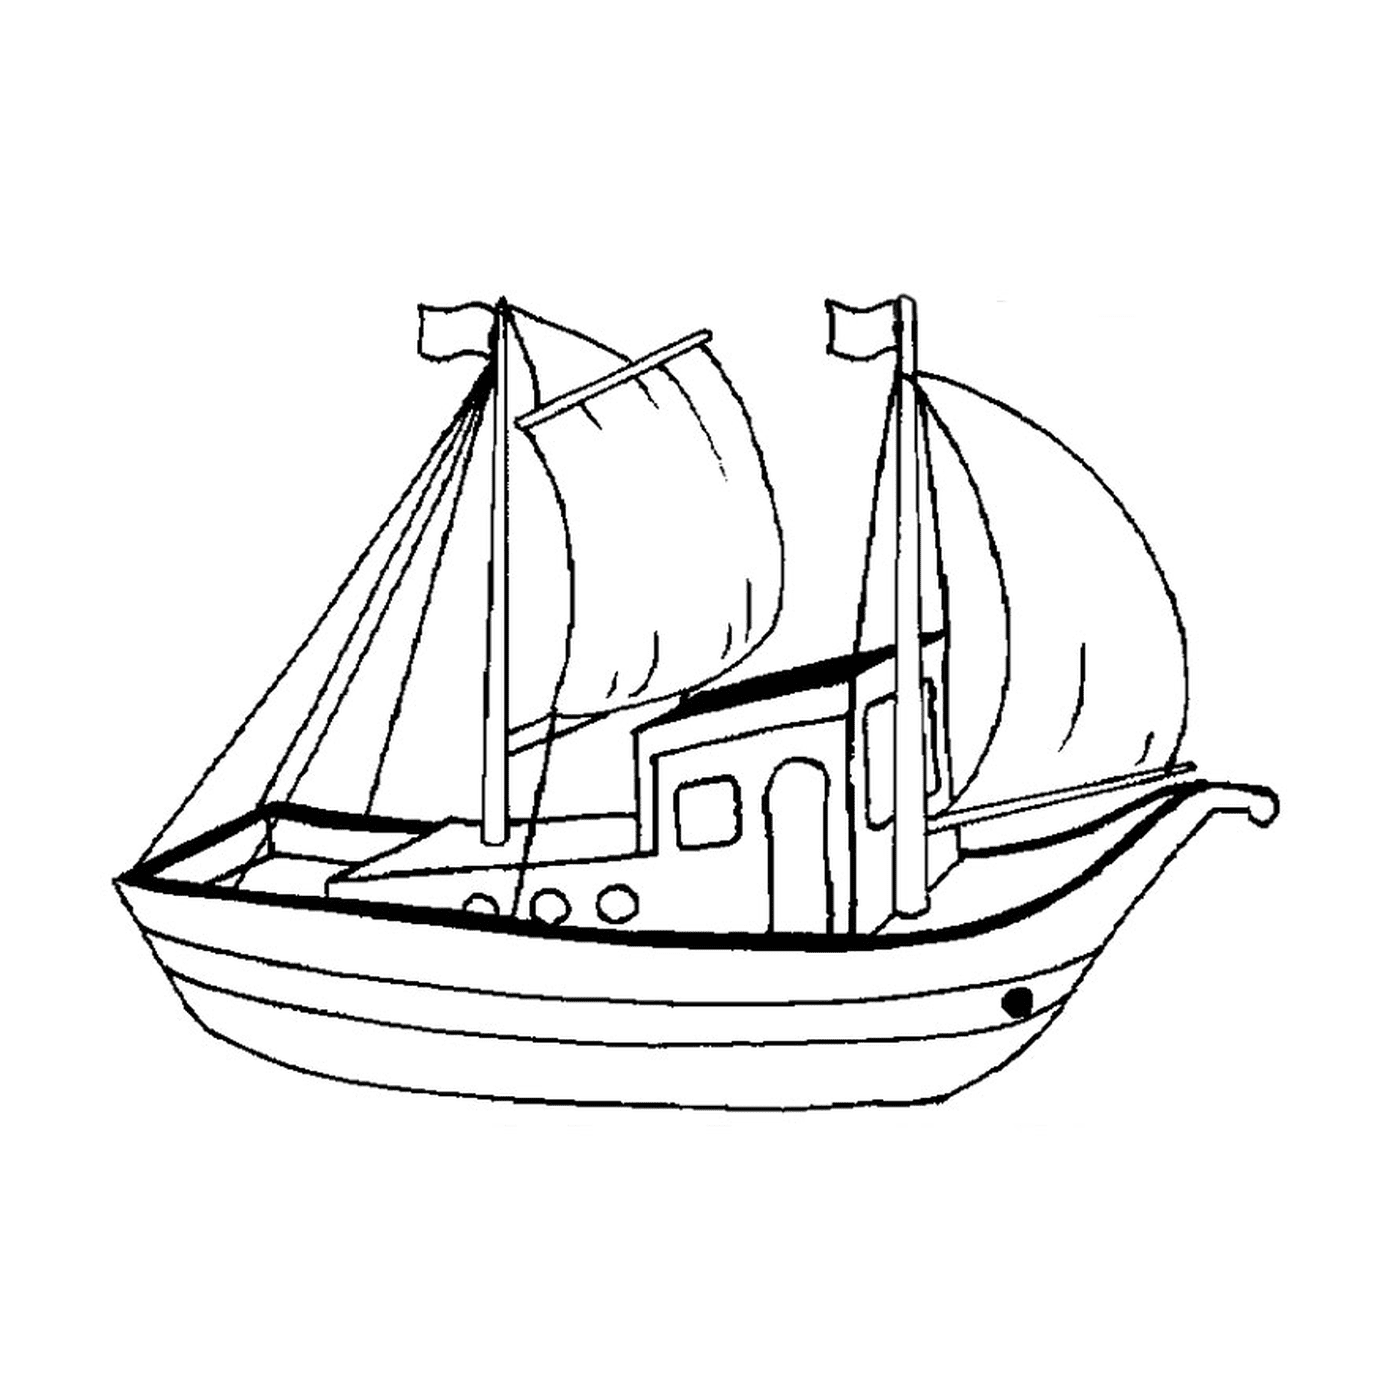   Un bateau de pêche avec une voile 